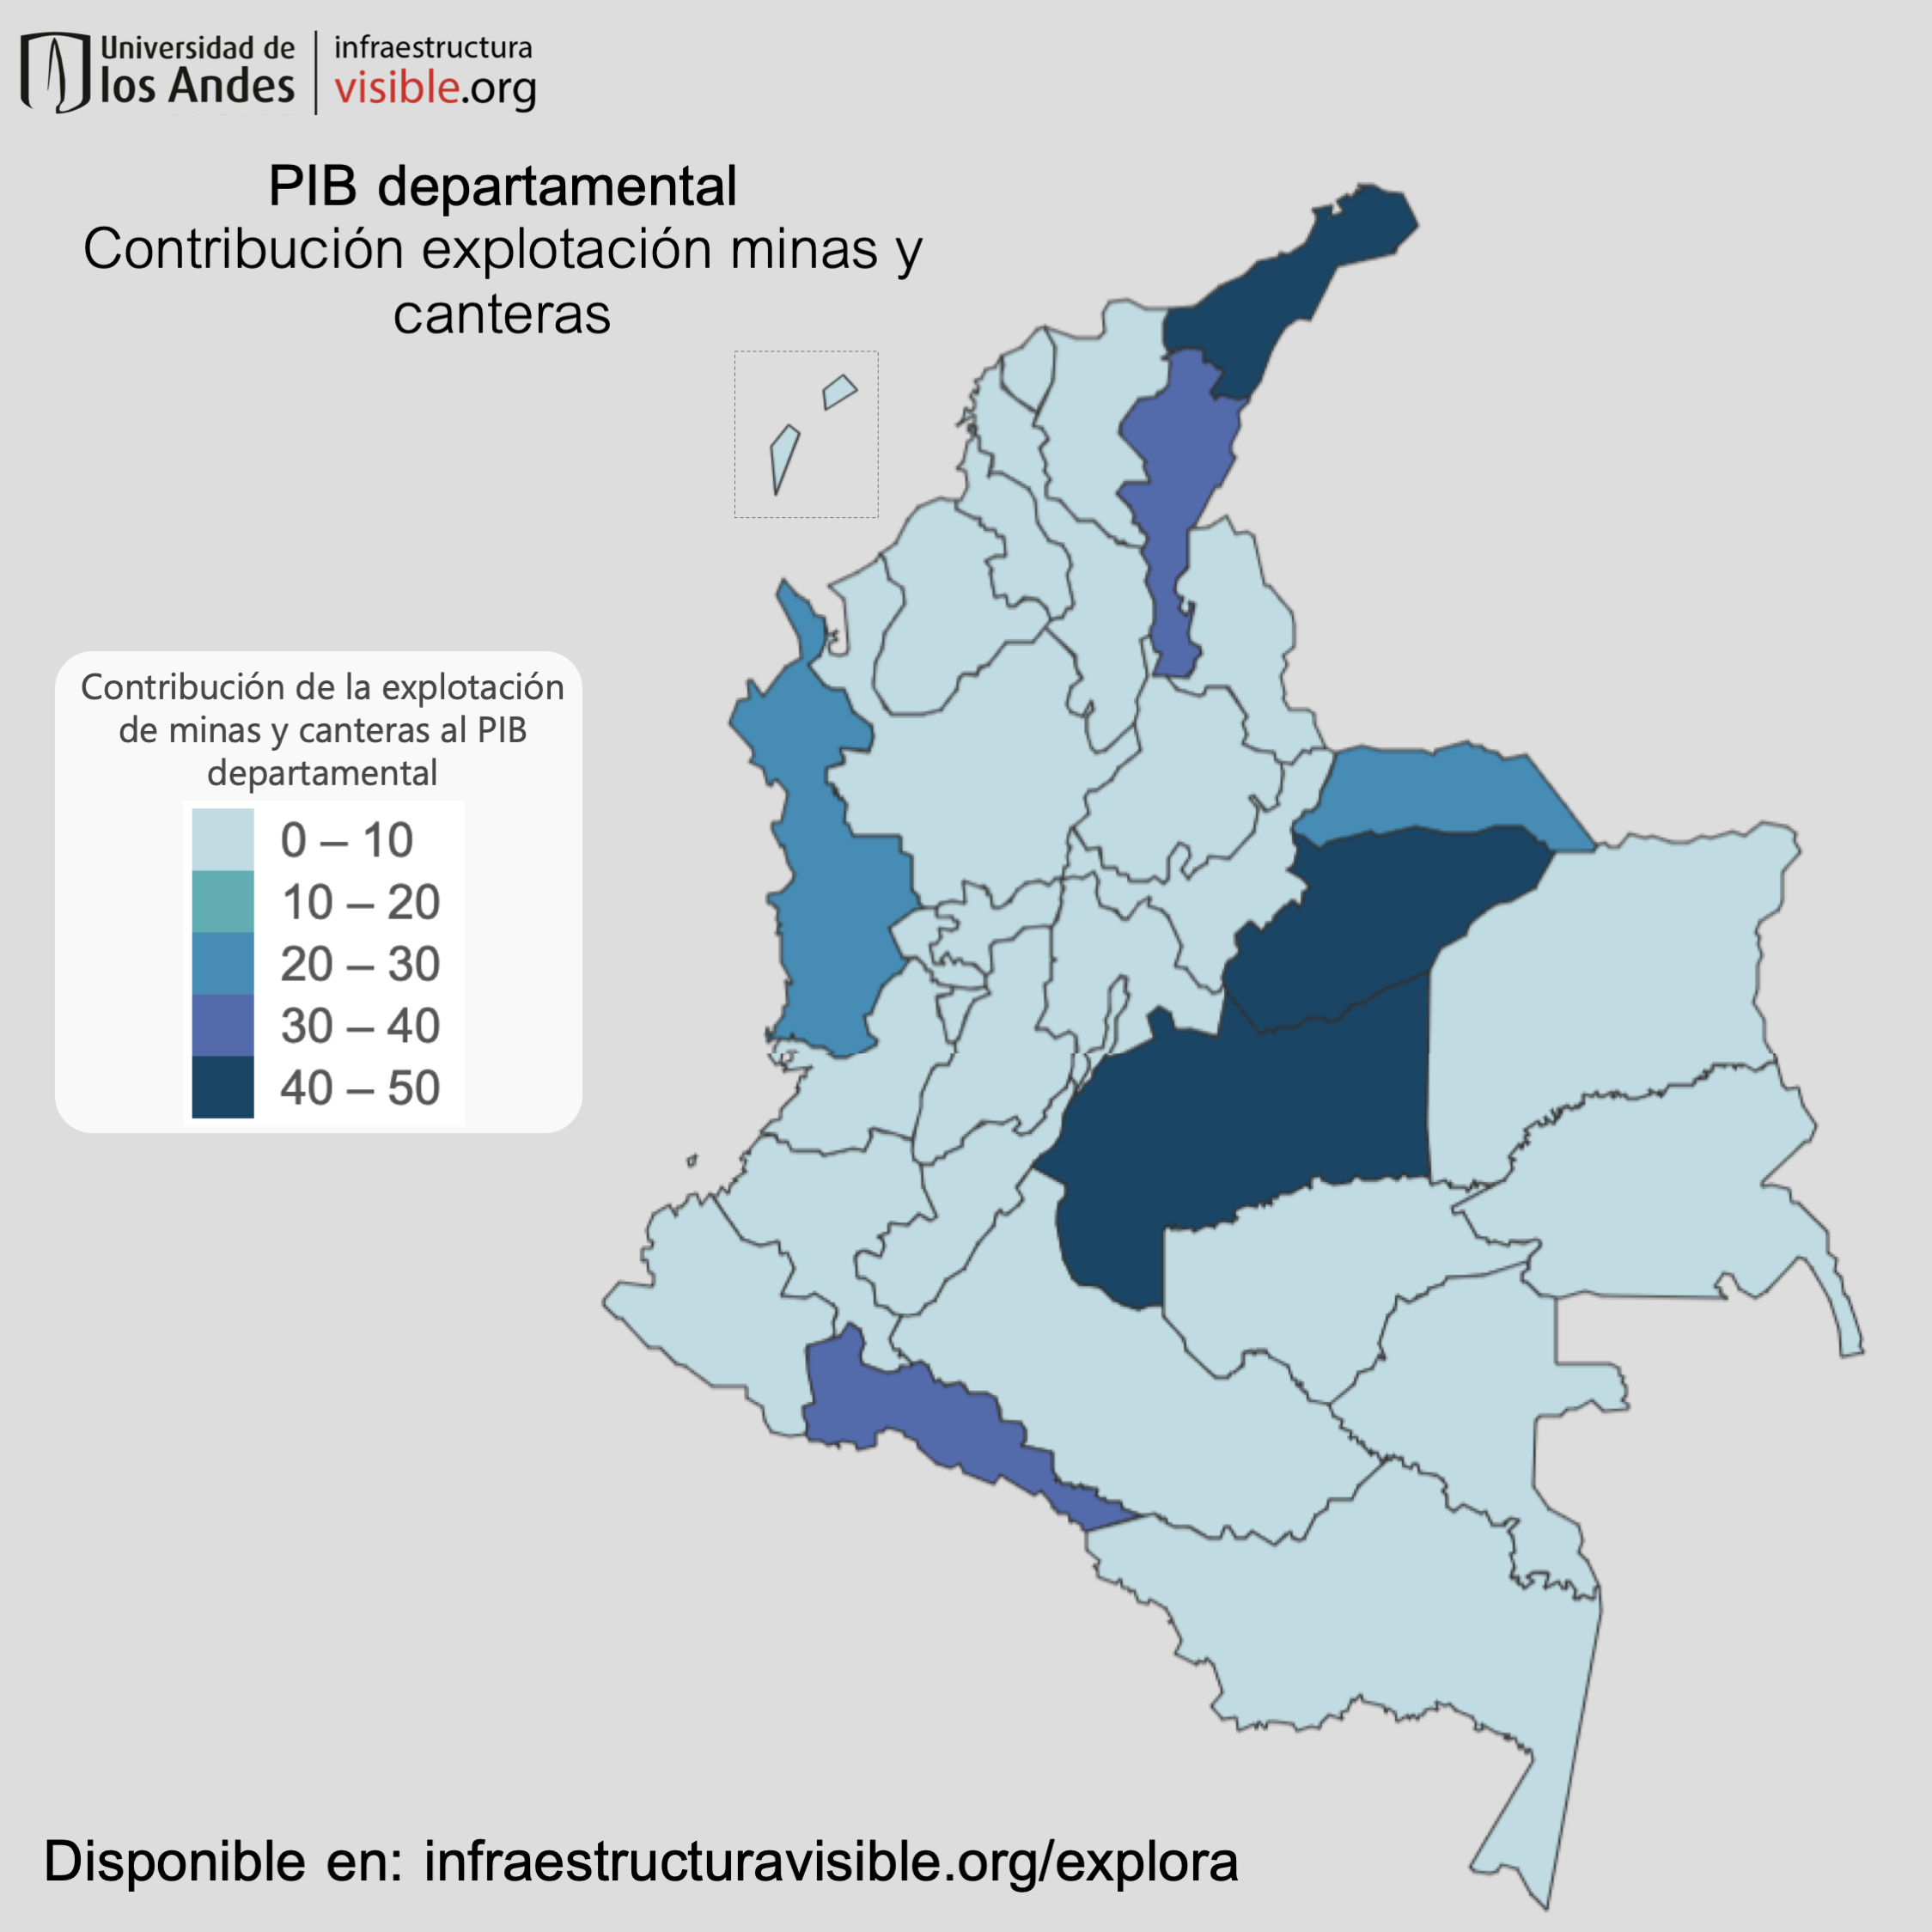 PIB departamental: Contribución explotación minas y canteras